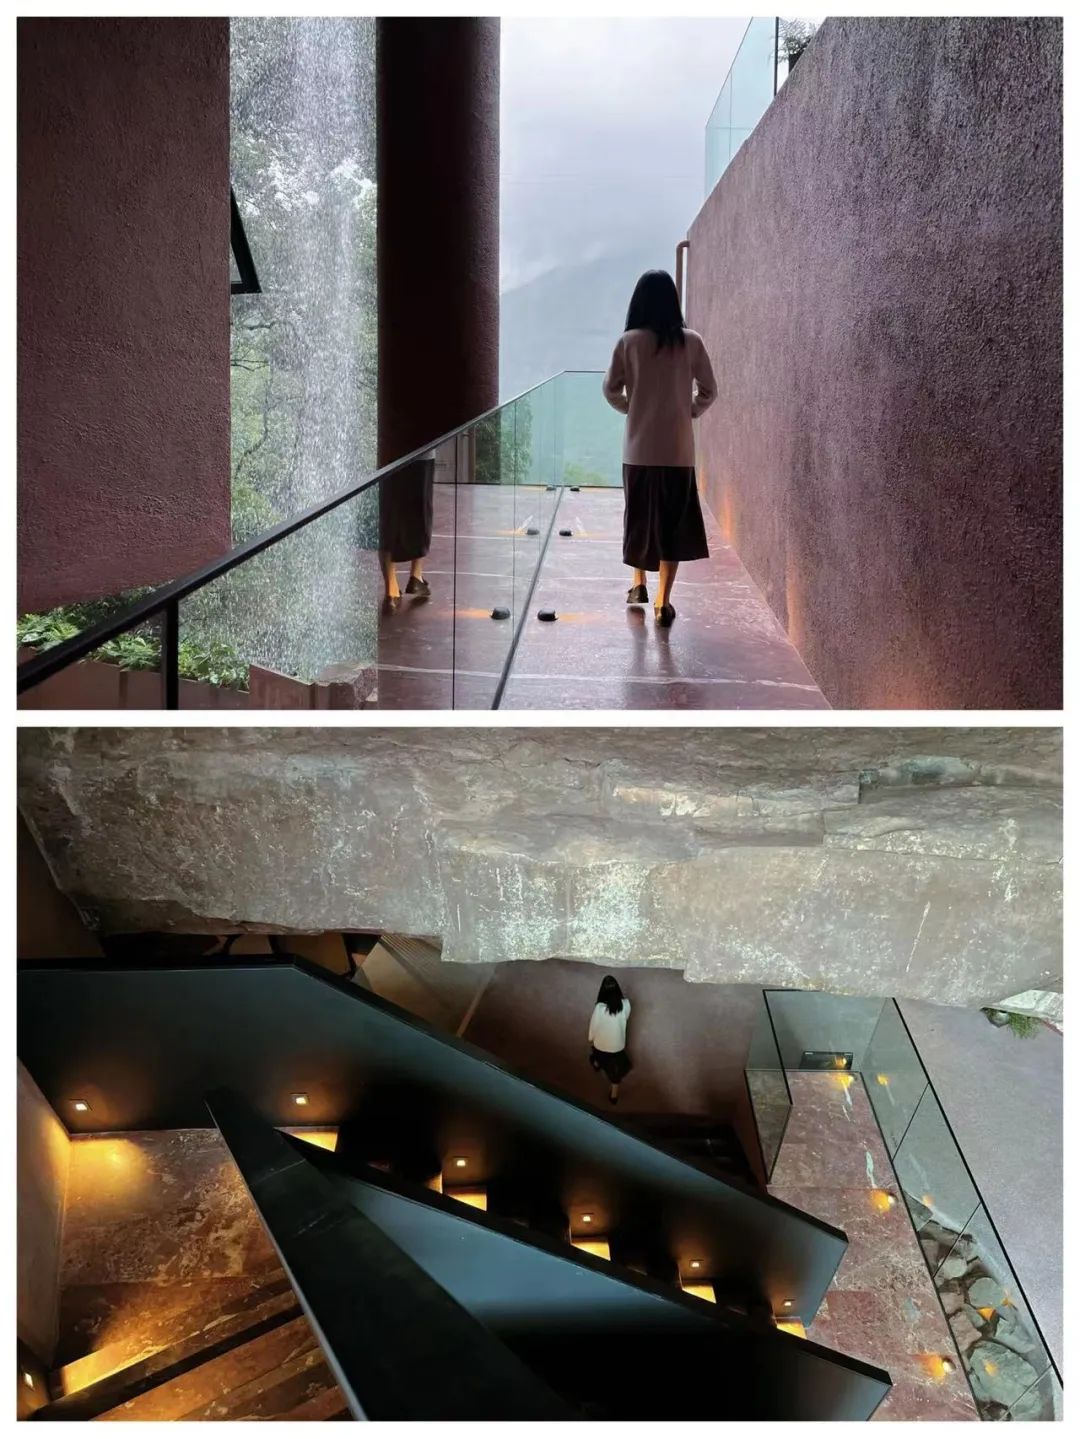 首个天然瀑布洞穴酒店在赤水开业